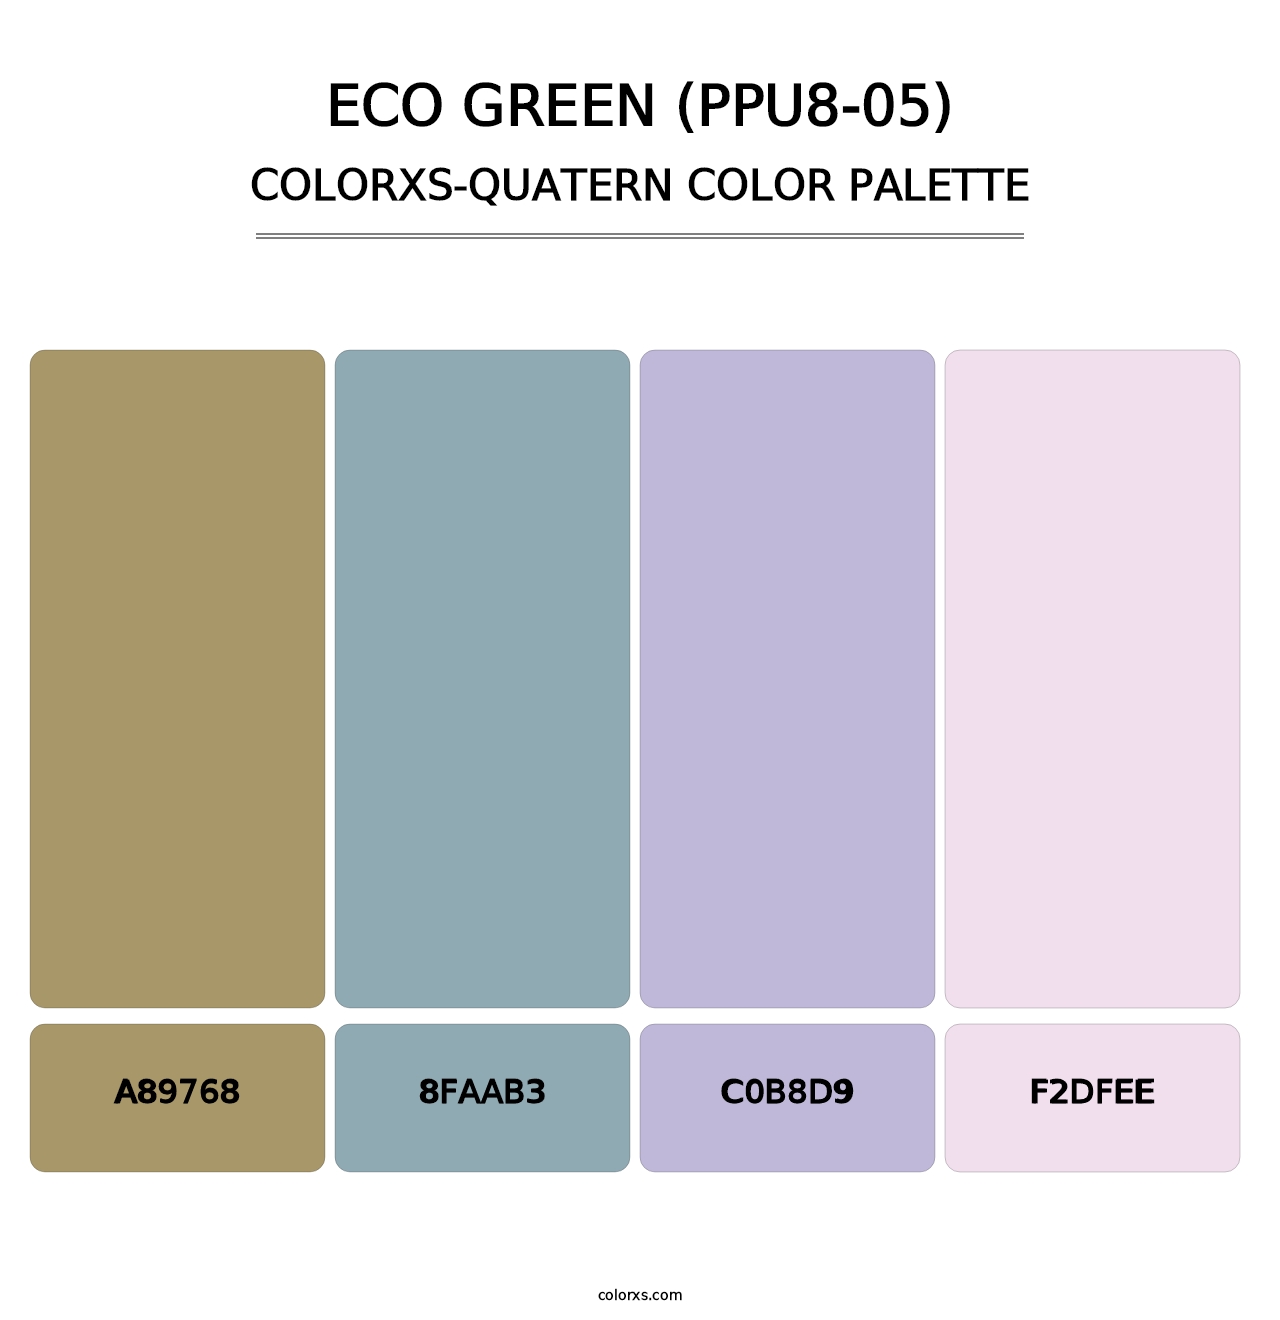 Eco Green (PPU8-05) - Colorxs Quatern Palette